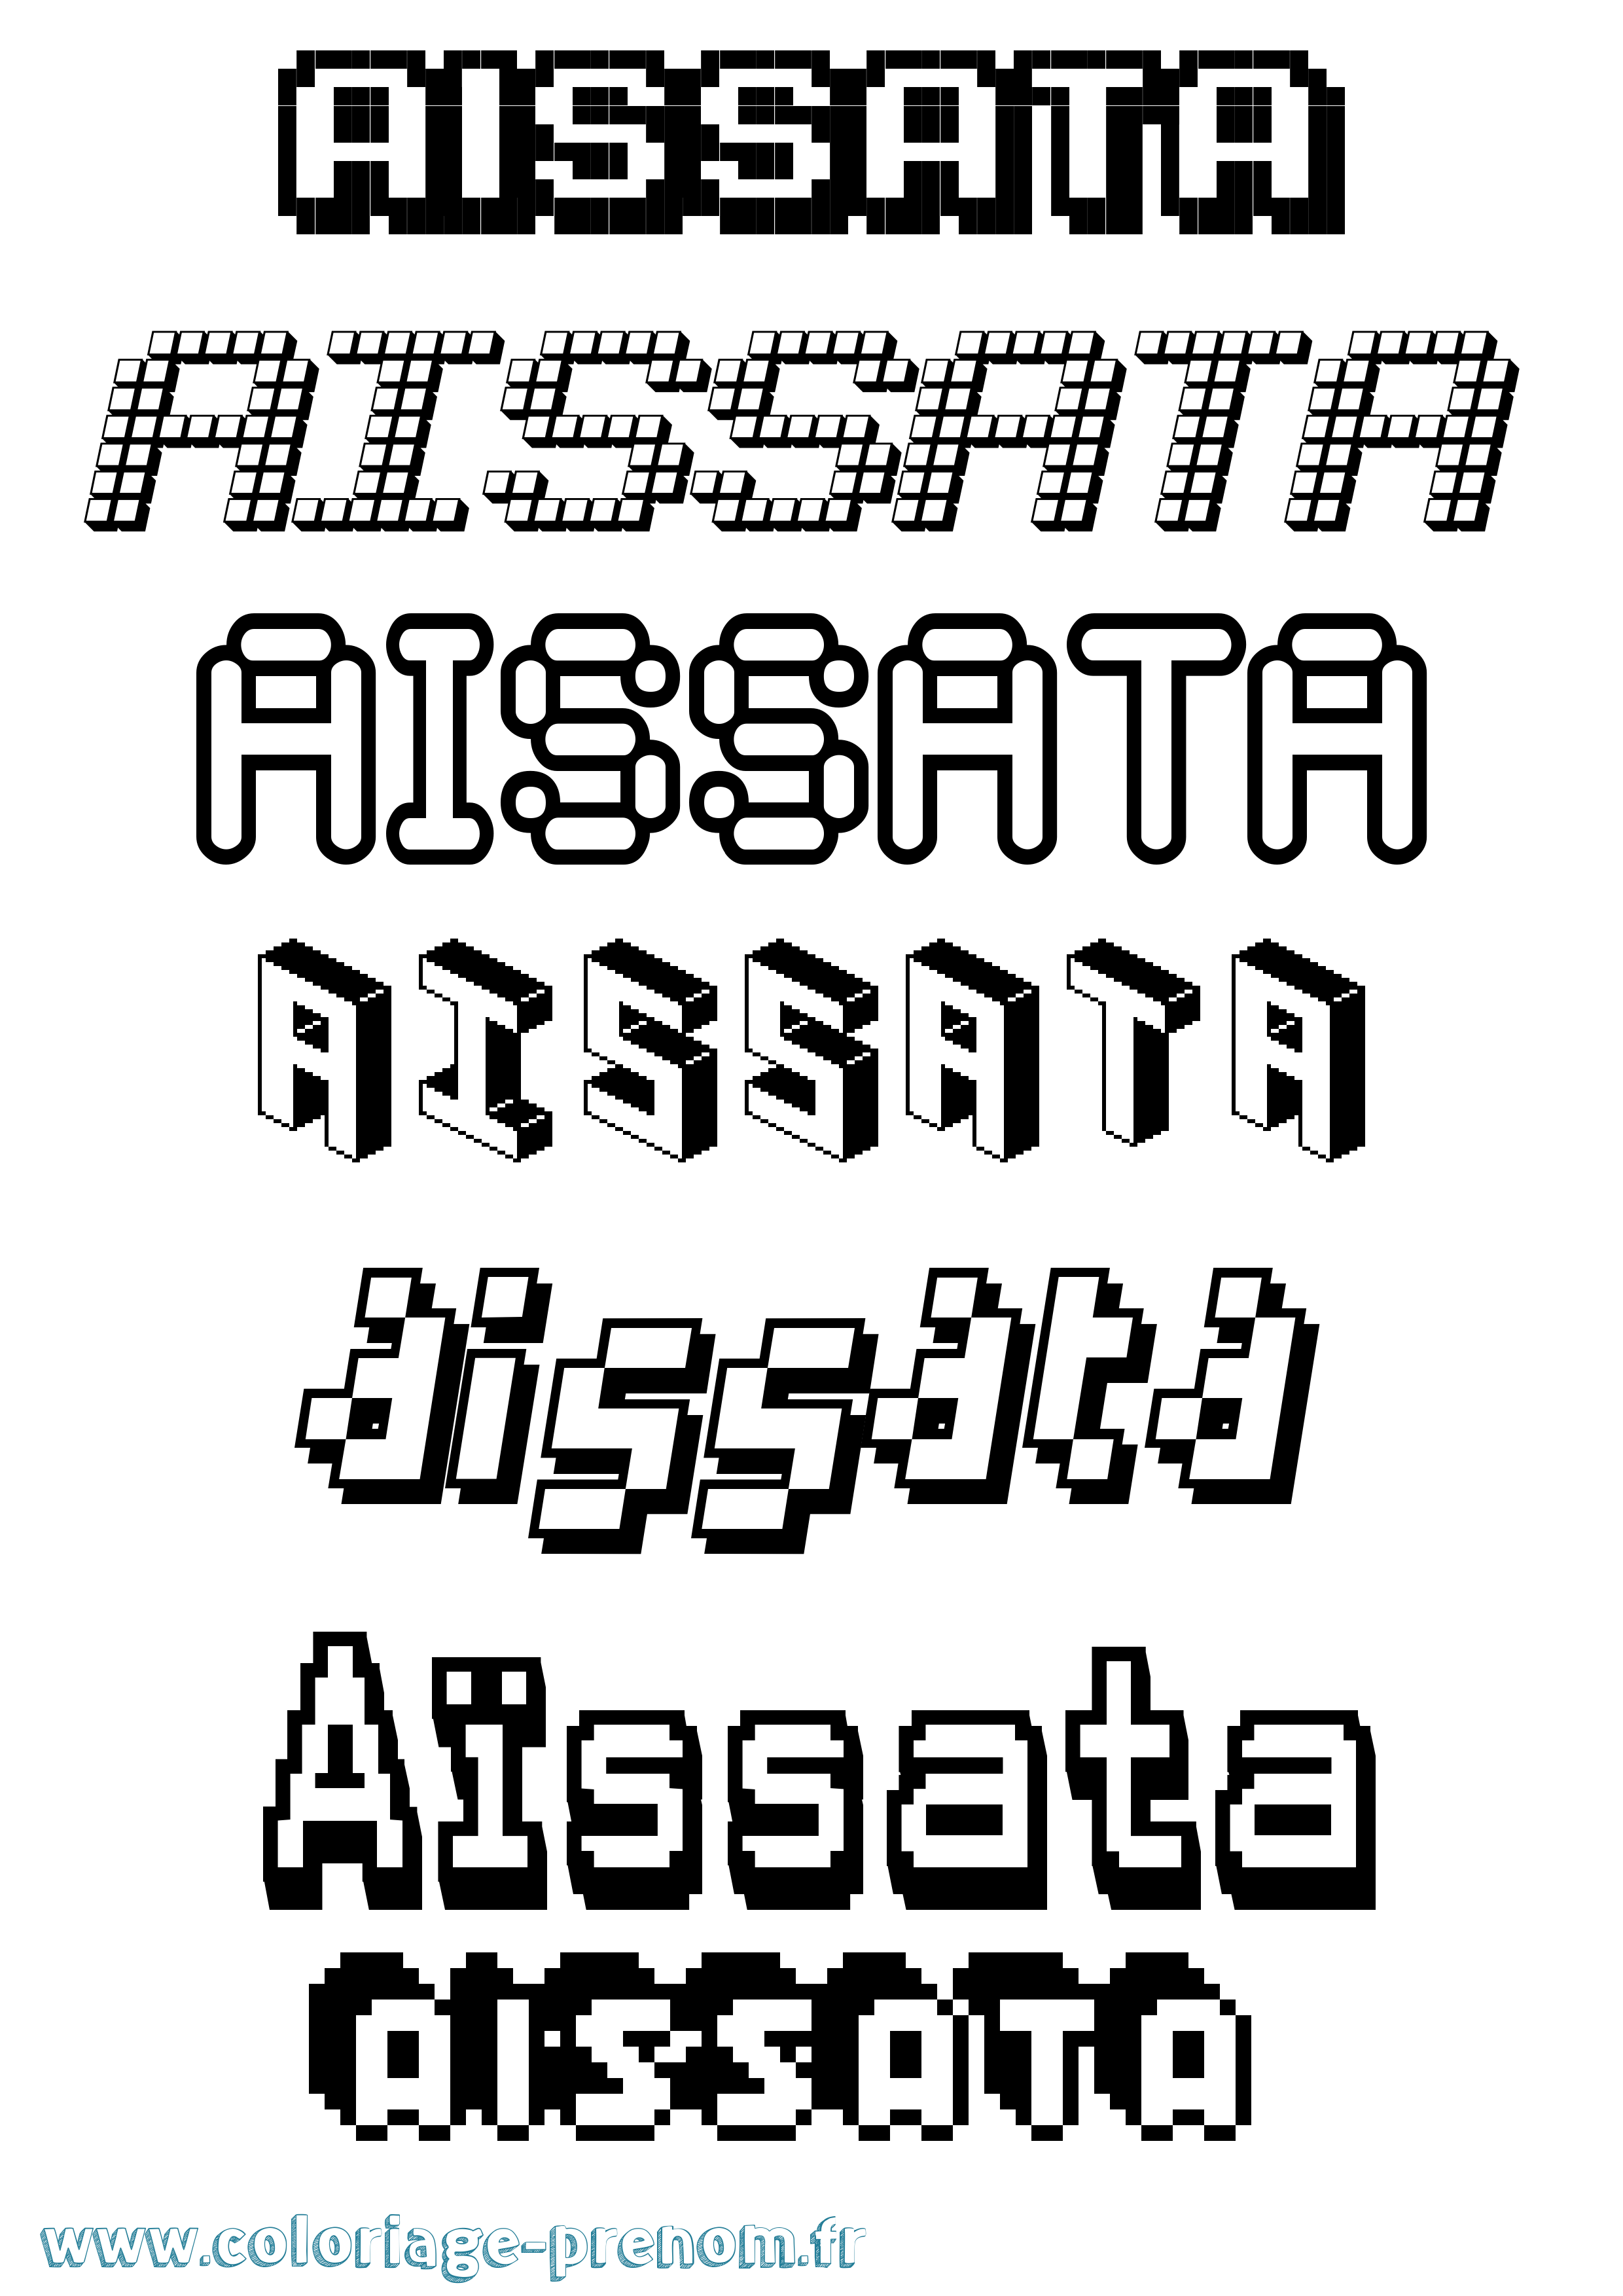 Coloriage prénom Aïssata Pixel